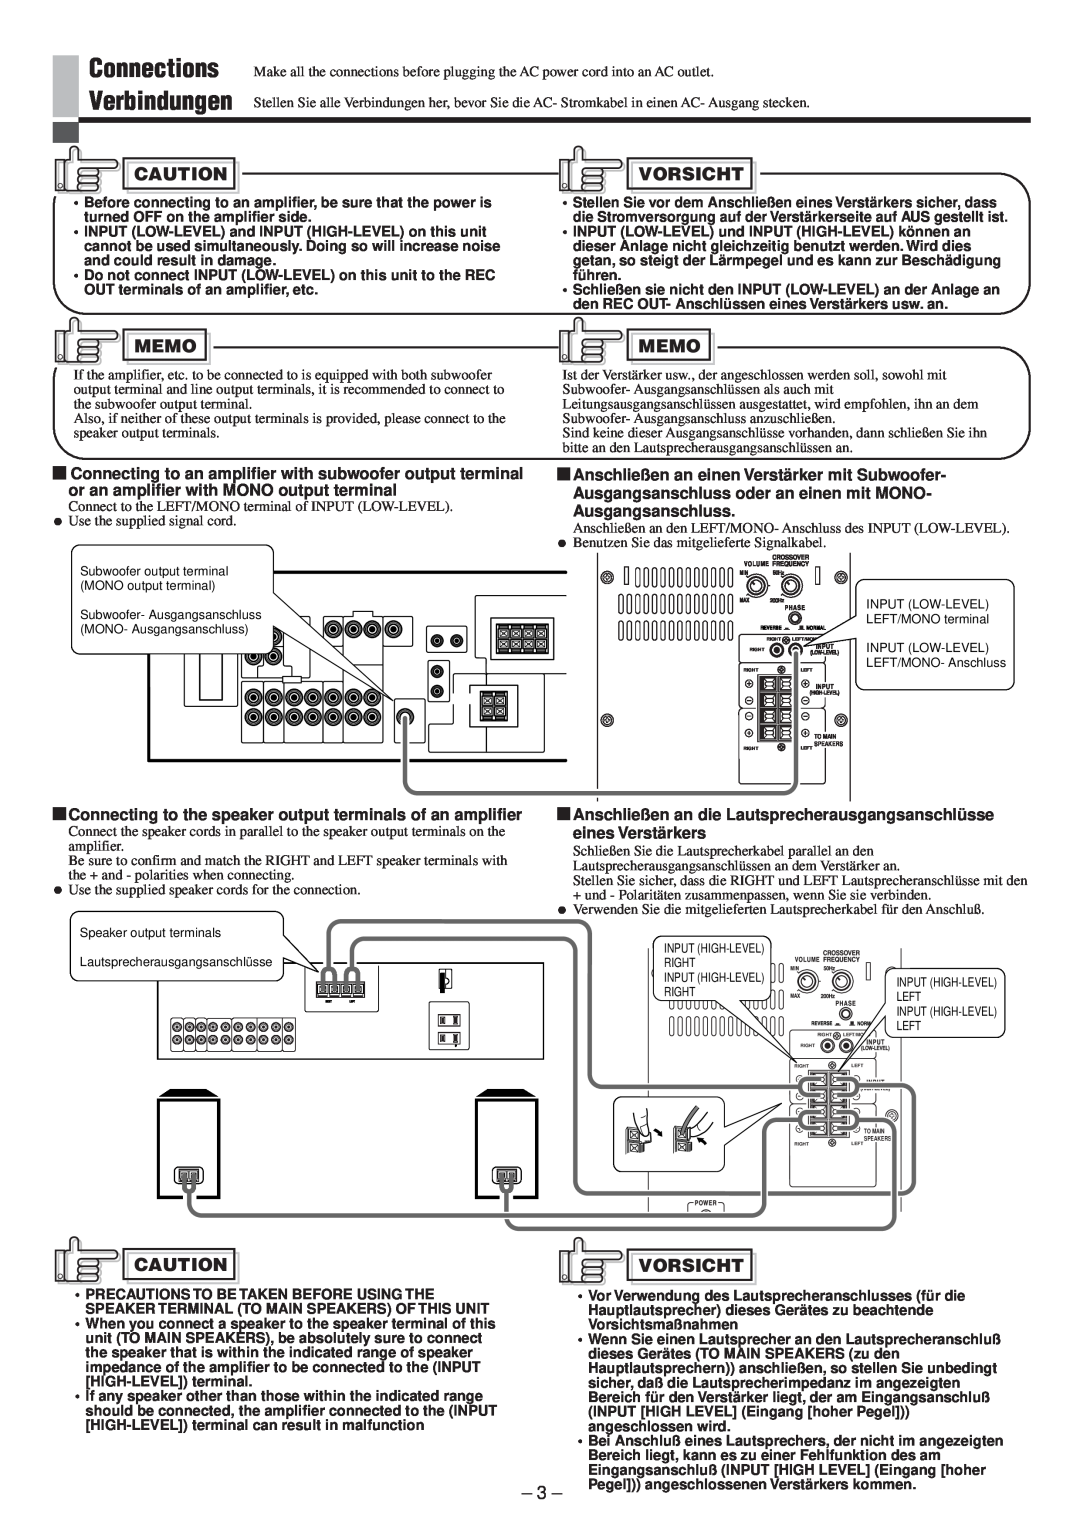 JVC LVT0673-001A manual Connections Verbindungen, Vorsicht, Memo, Anschließen an einen Verstärker mit Subwoofer 